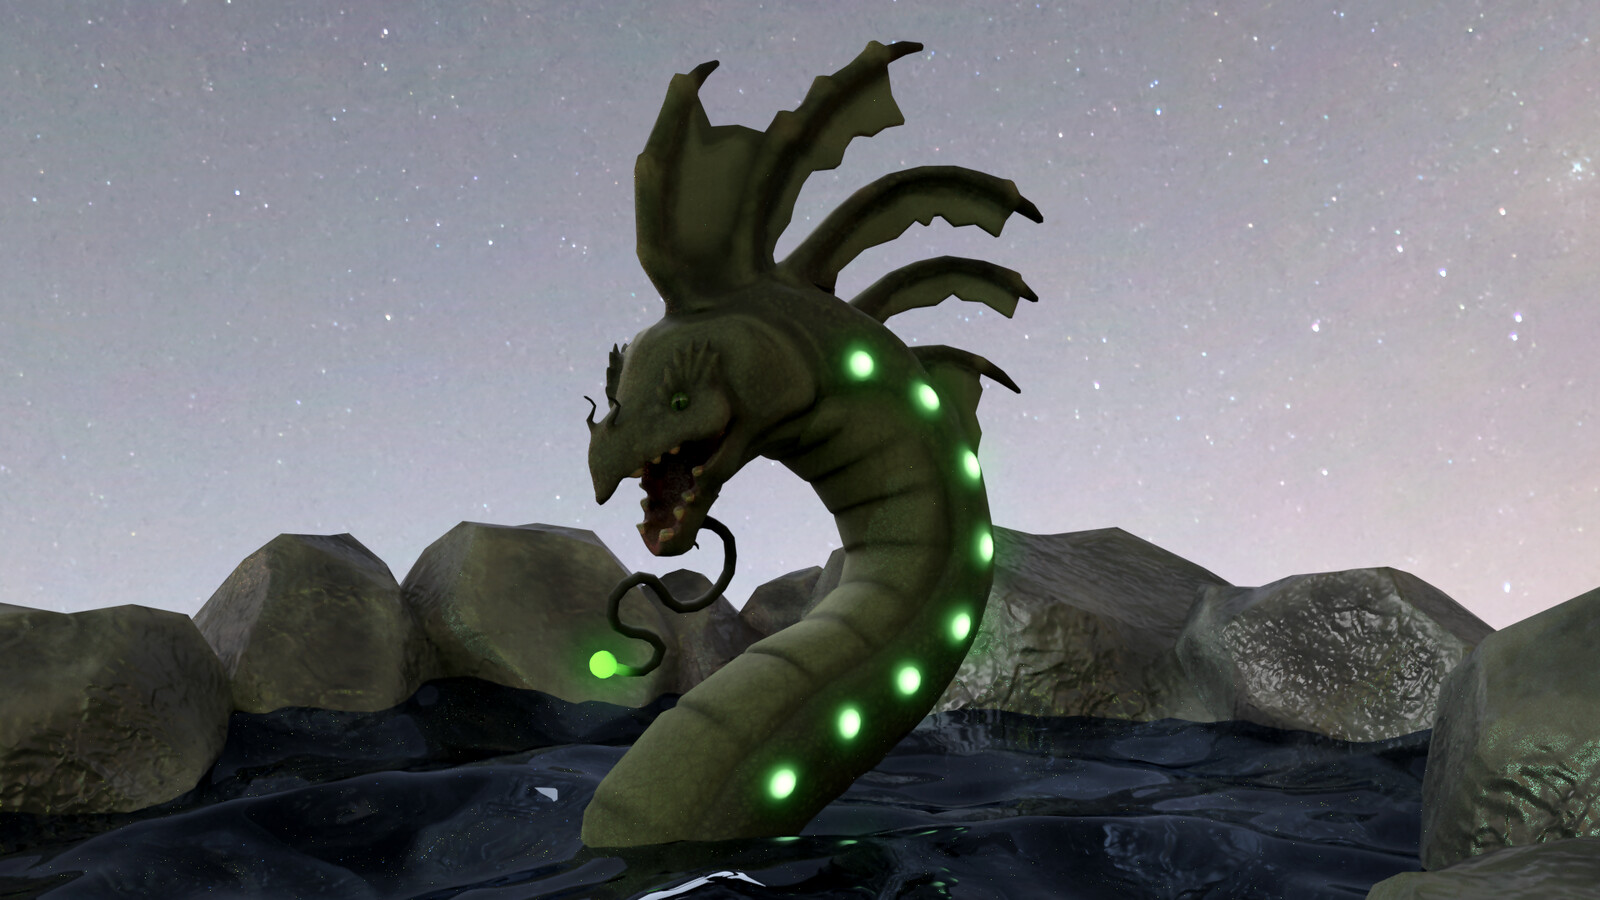 The Green Hydra boss monster